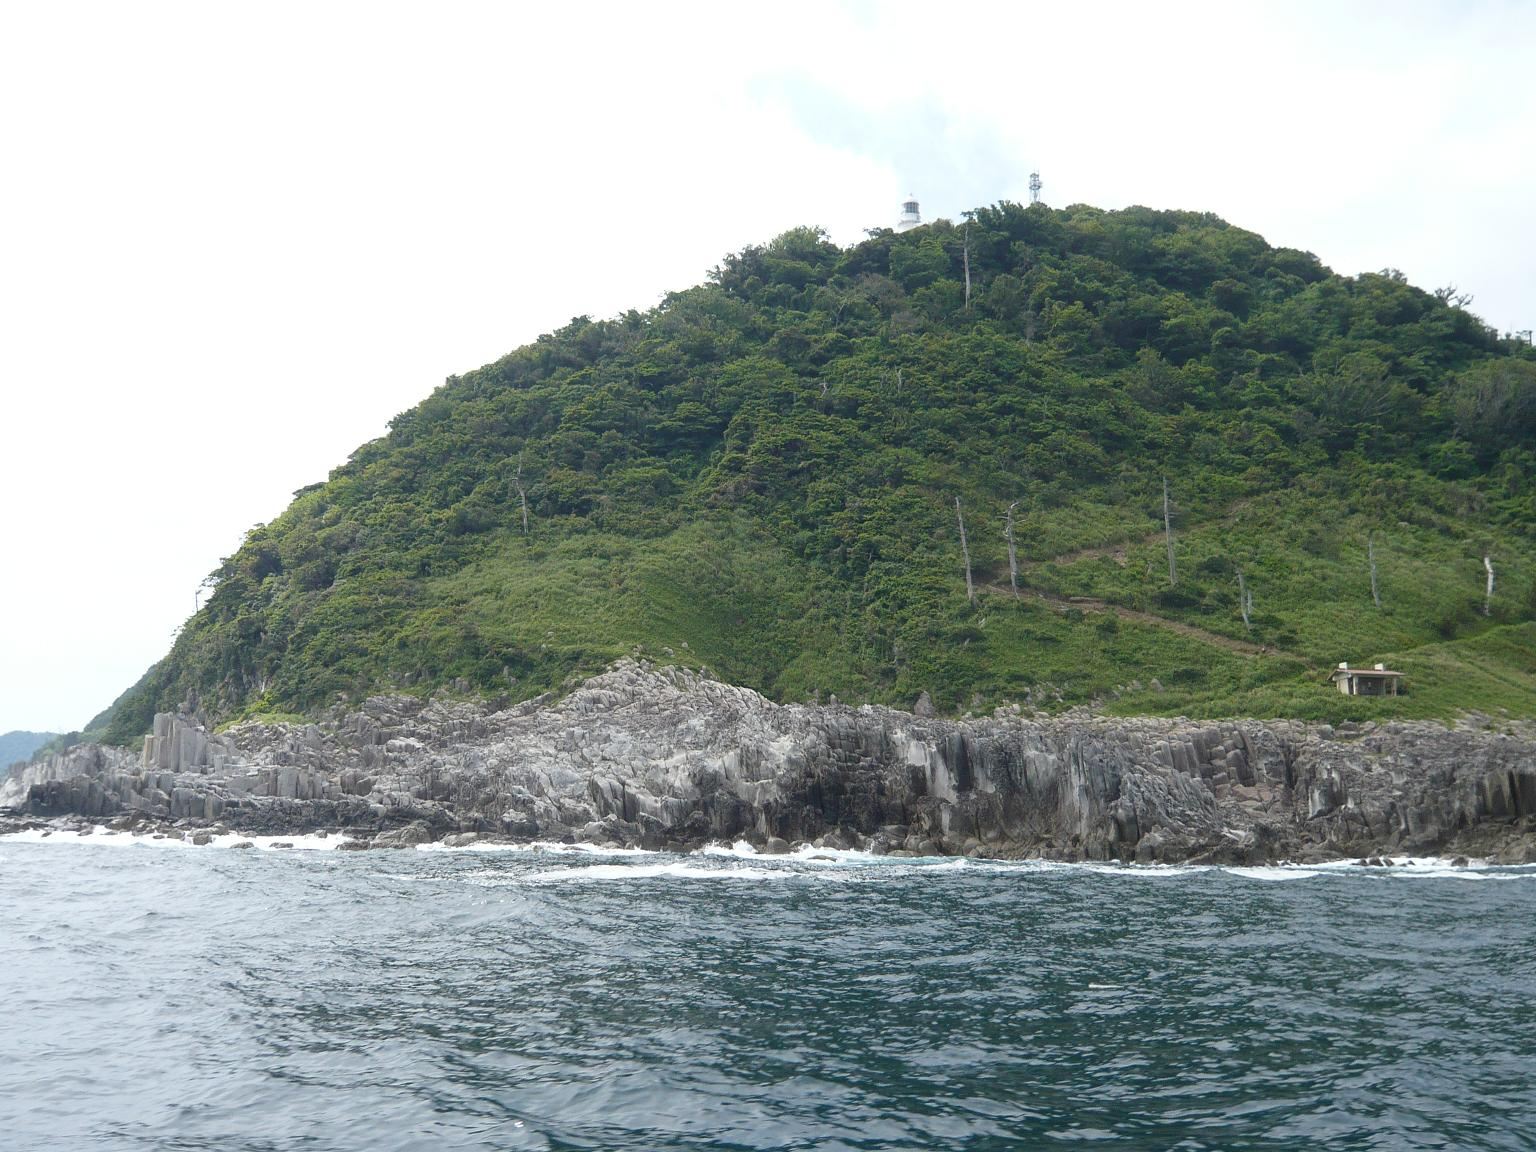 La roche andésite forme de majestueux joints colonnaires au cap Kyoga-Misaki.